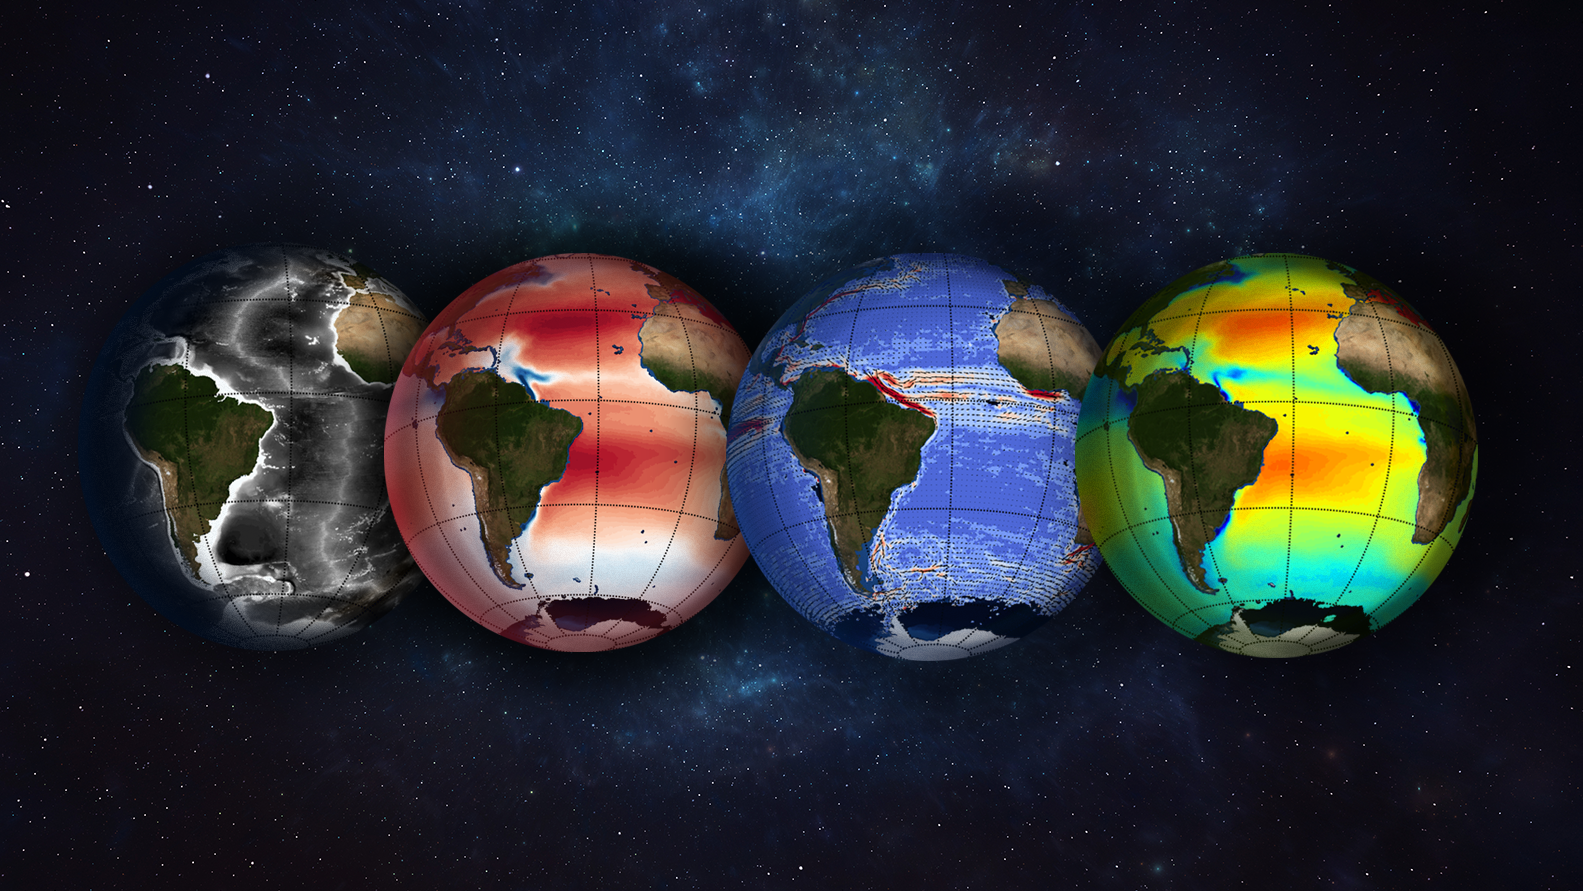 Quatro globos com diferentes tipos de mapeamentos meteoceanográficos